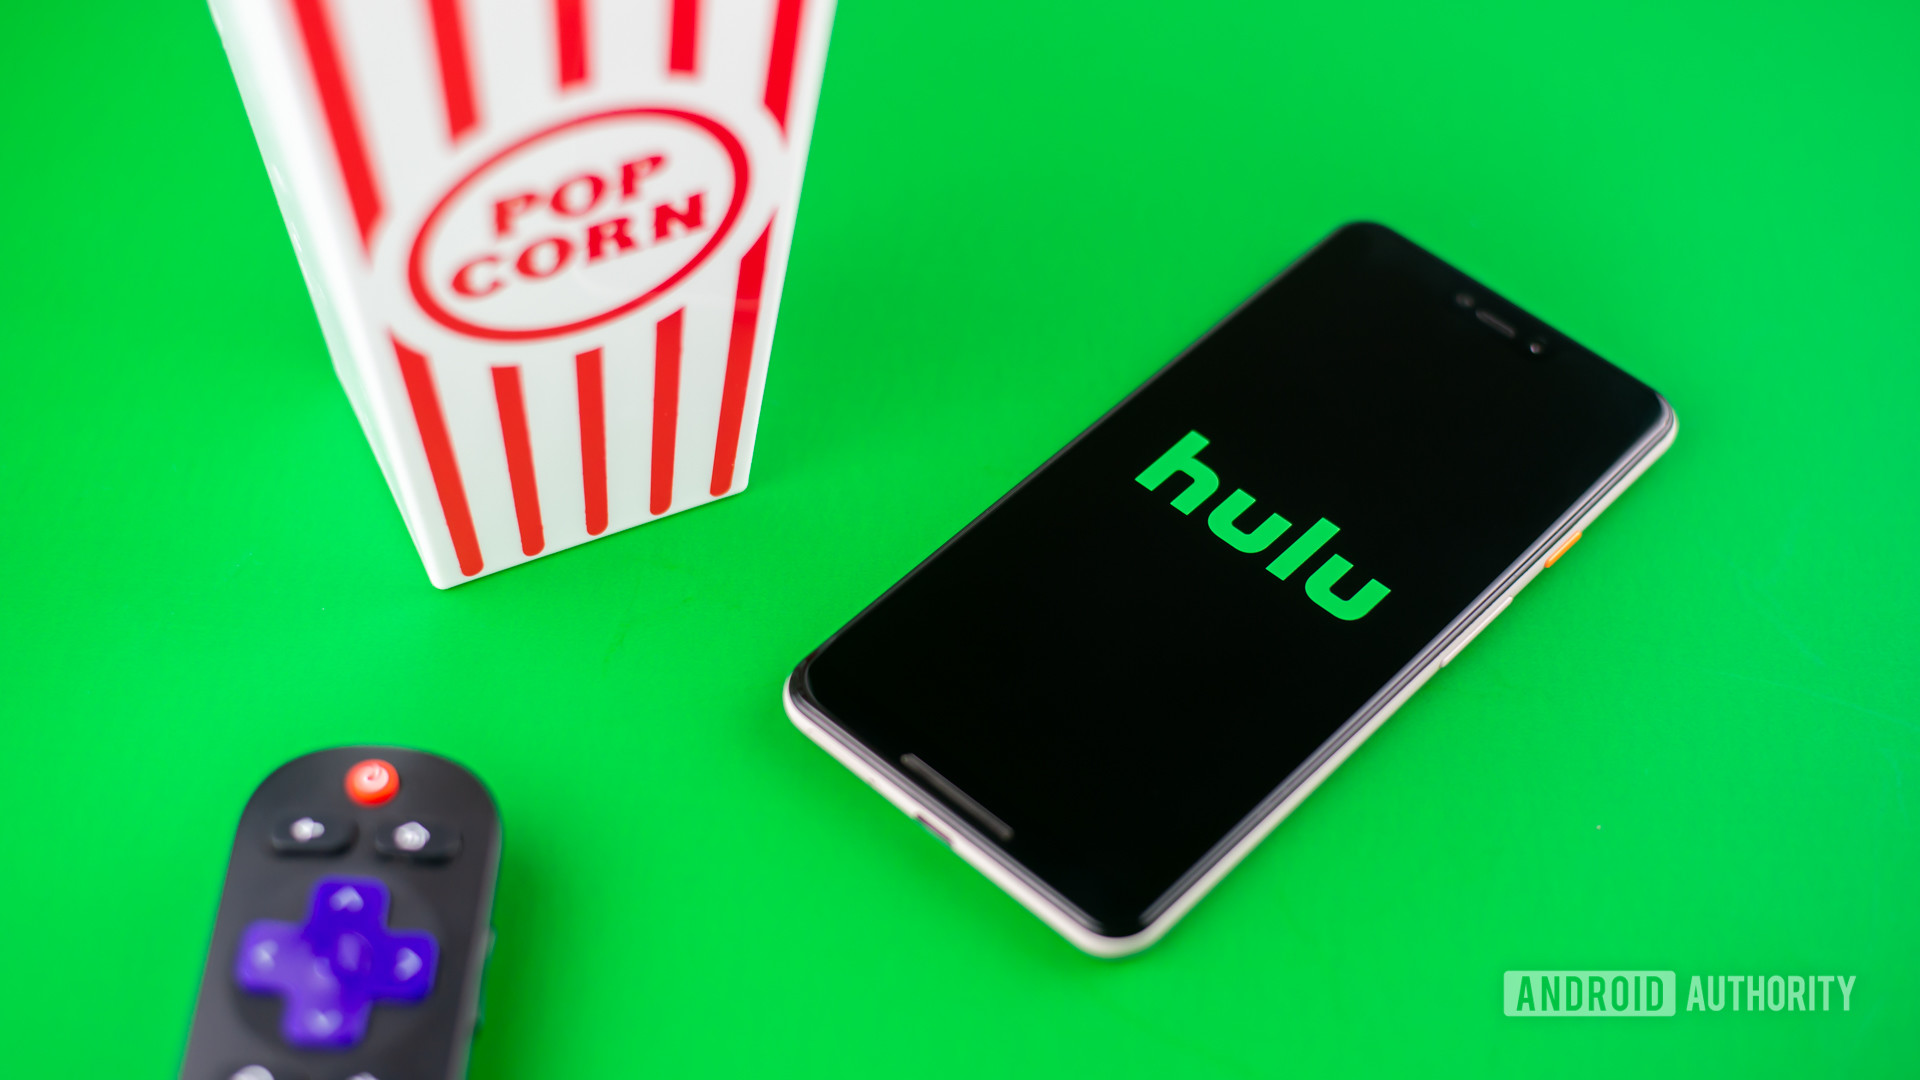 Hulu股票照片绿色背景1